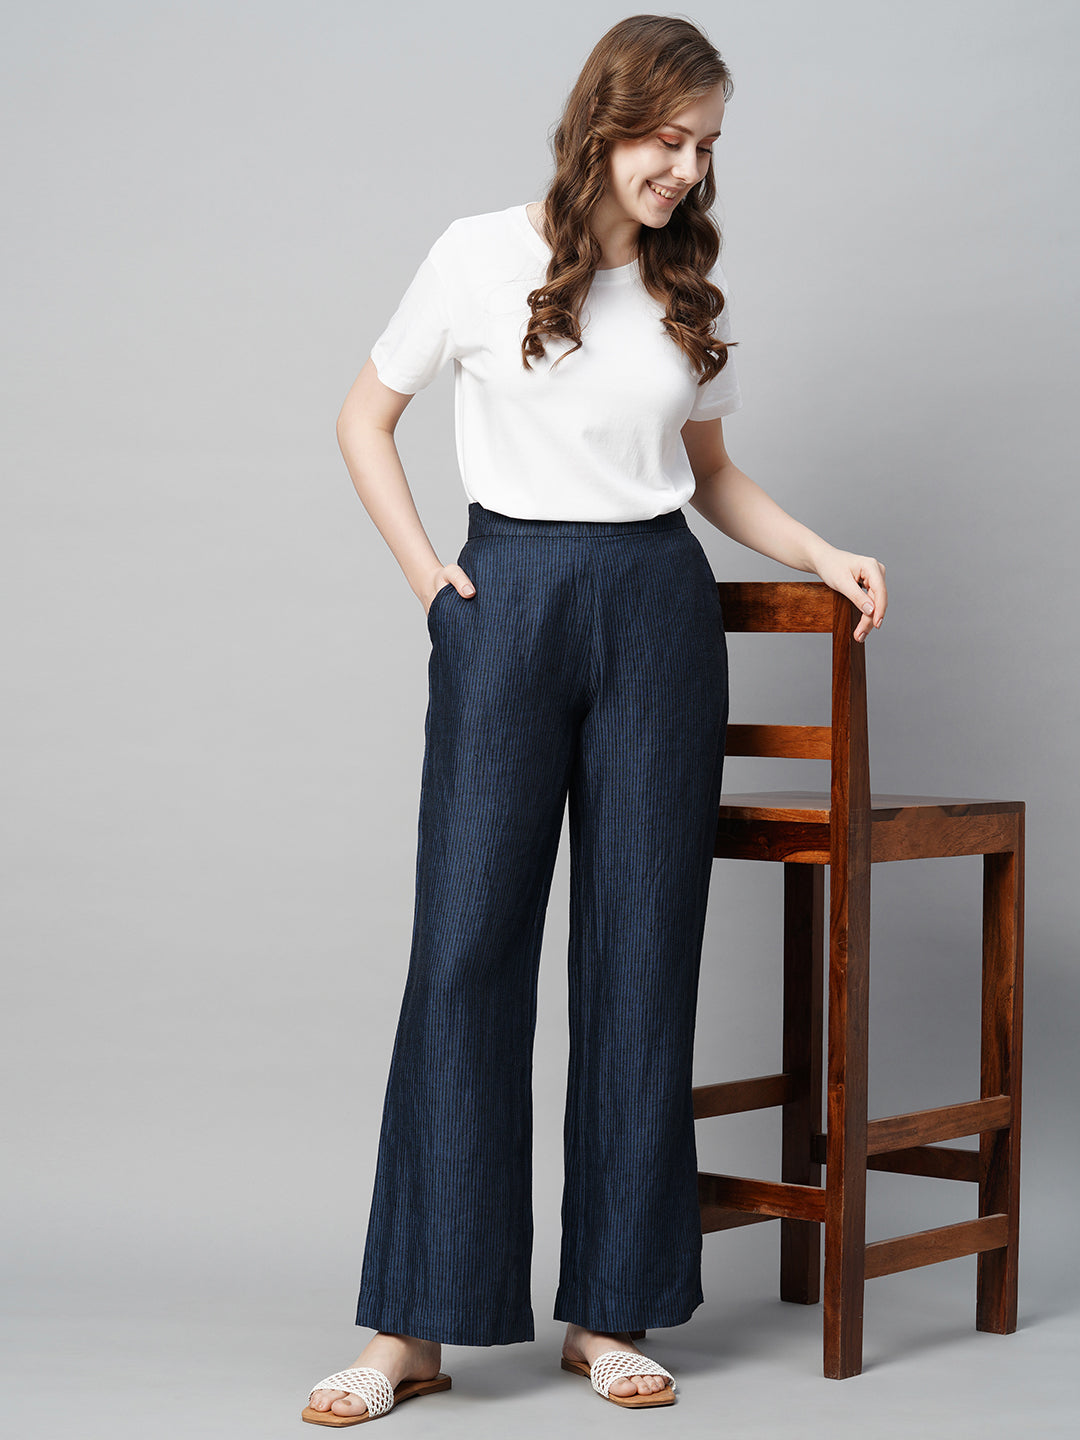 Buy Women's Linen Semi-Formal Wear Straight Fit Pants